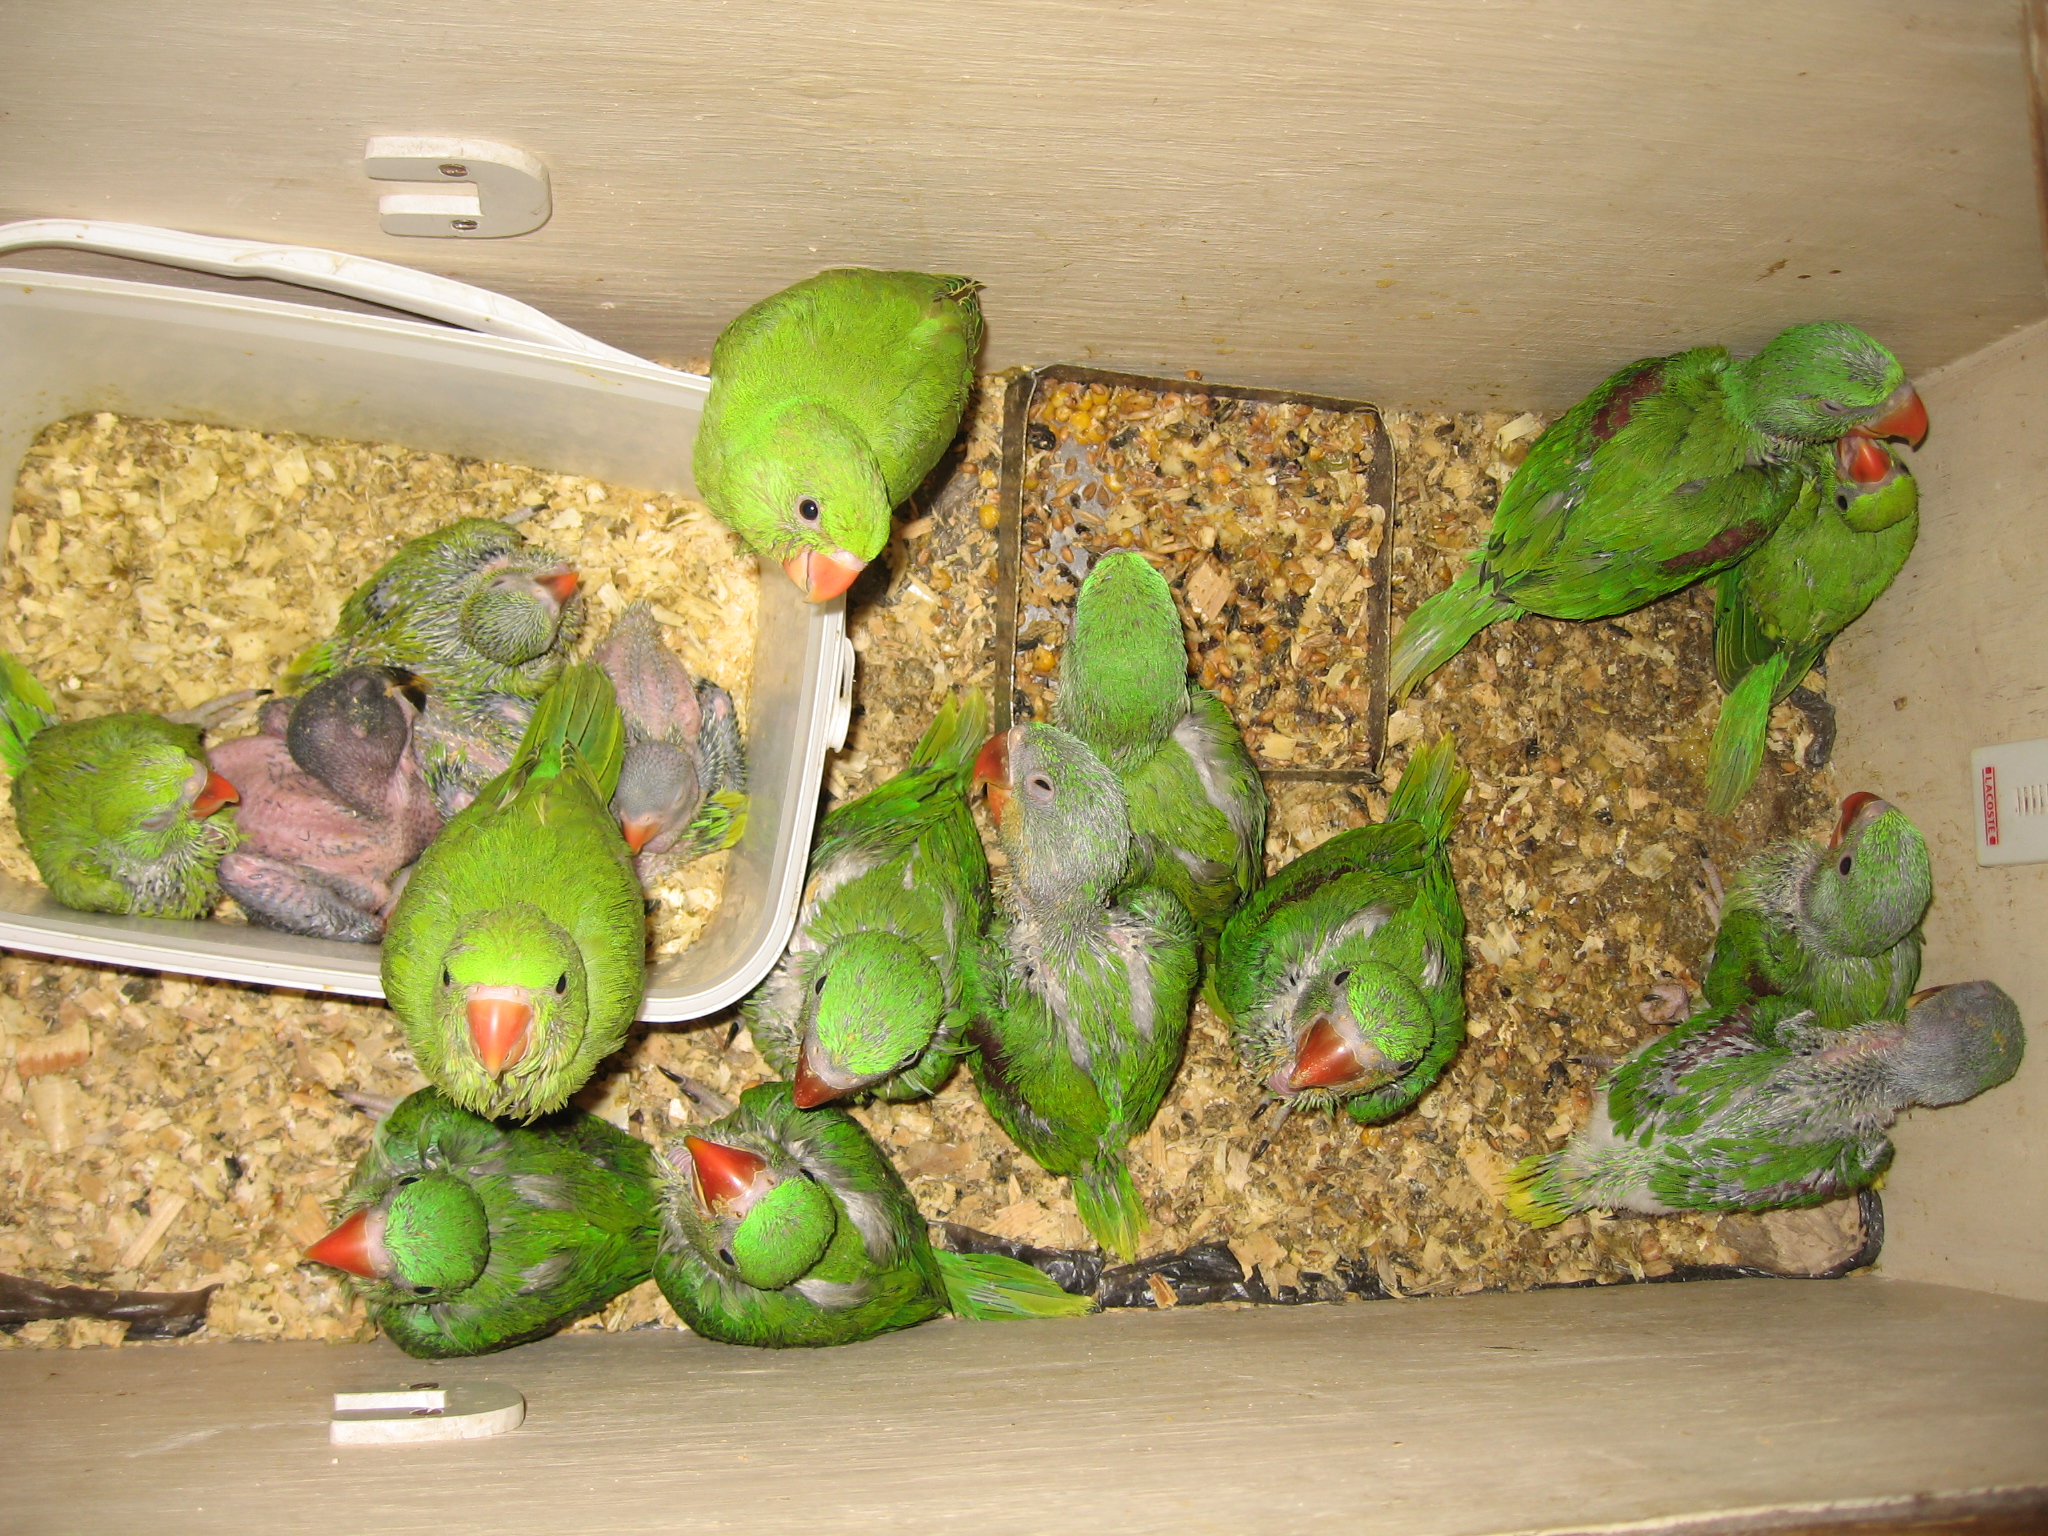 Особенности разведения попугаев корелла в домашних условиях